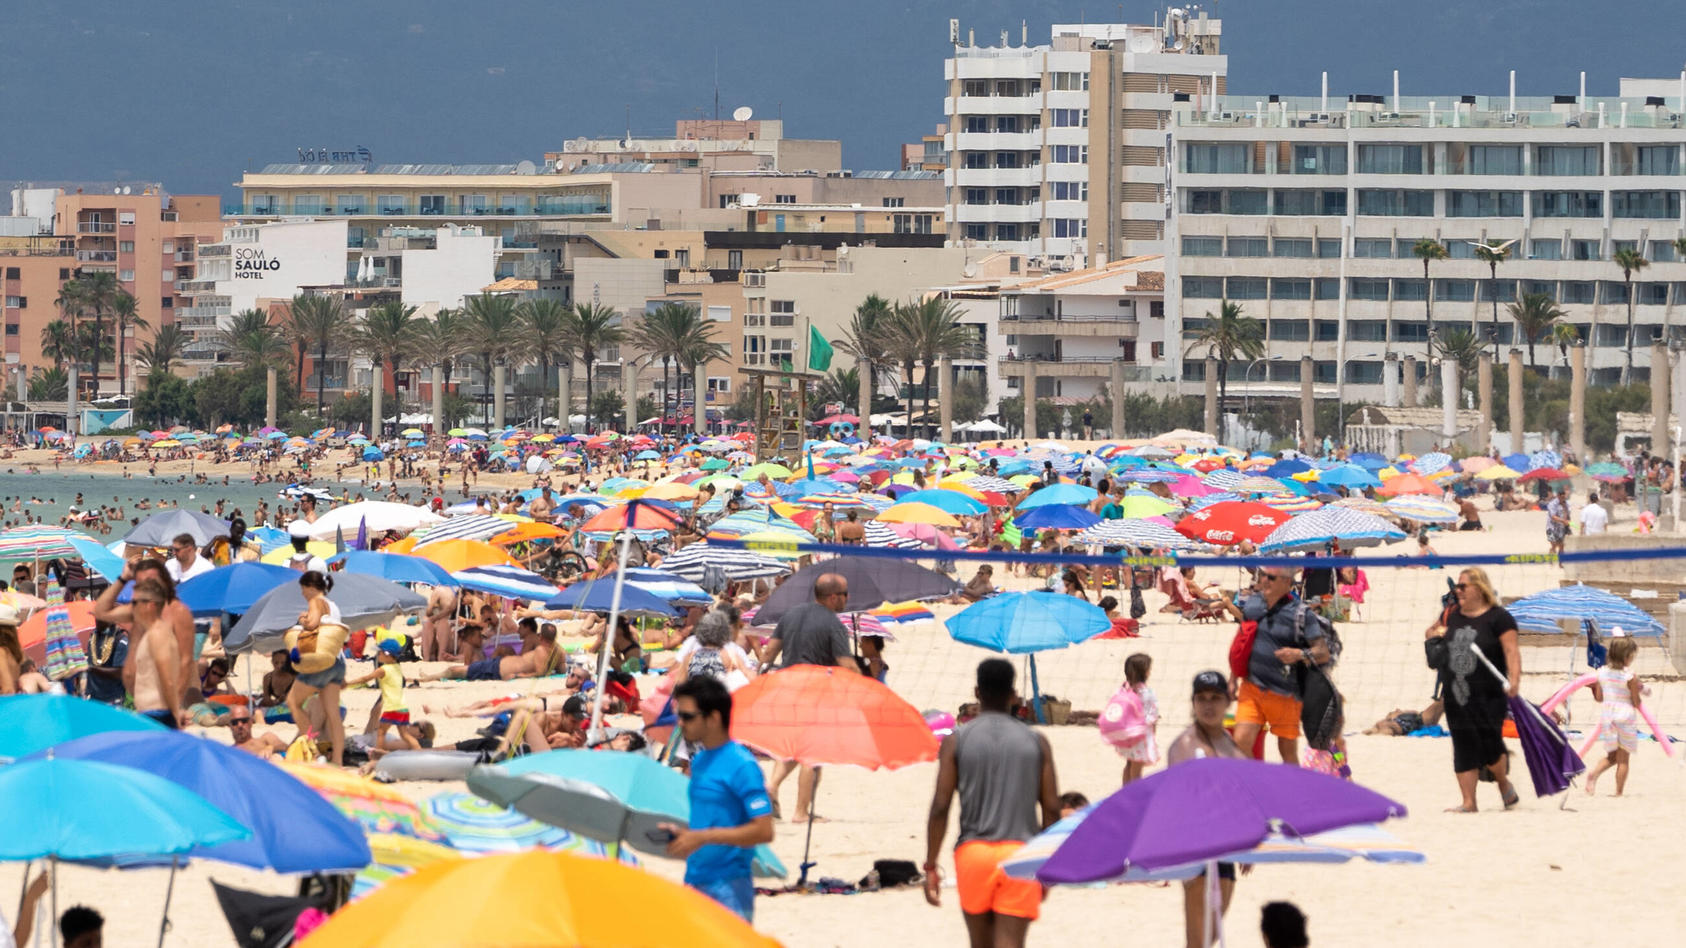 Der Strand an der Playa de Palma ist deutlich gefüllter als in den Tagen zuvor. Doch die meisten Ansteckungen kommen offenbar auf Familienfesten und Feiern zustande